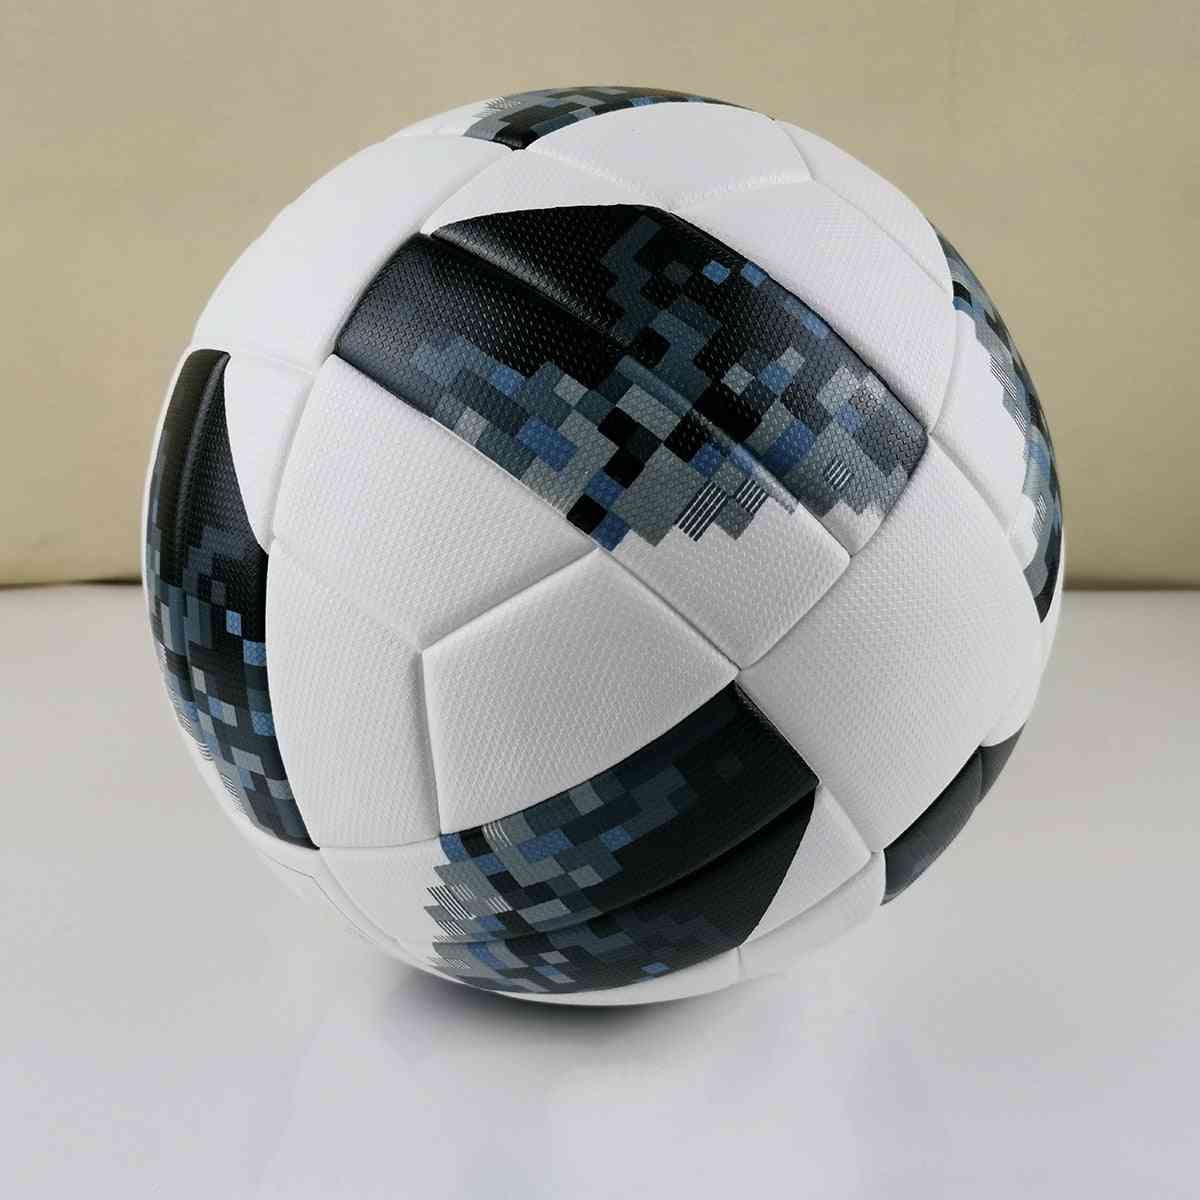 כדורגל בגודל רשמי, עמיד להחליק מגרגירי pu, מתנת כדורגל חלקה, כדורי אימון של צוות מטרה